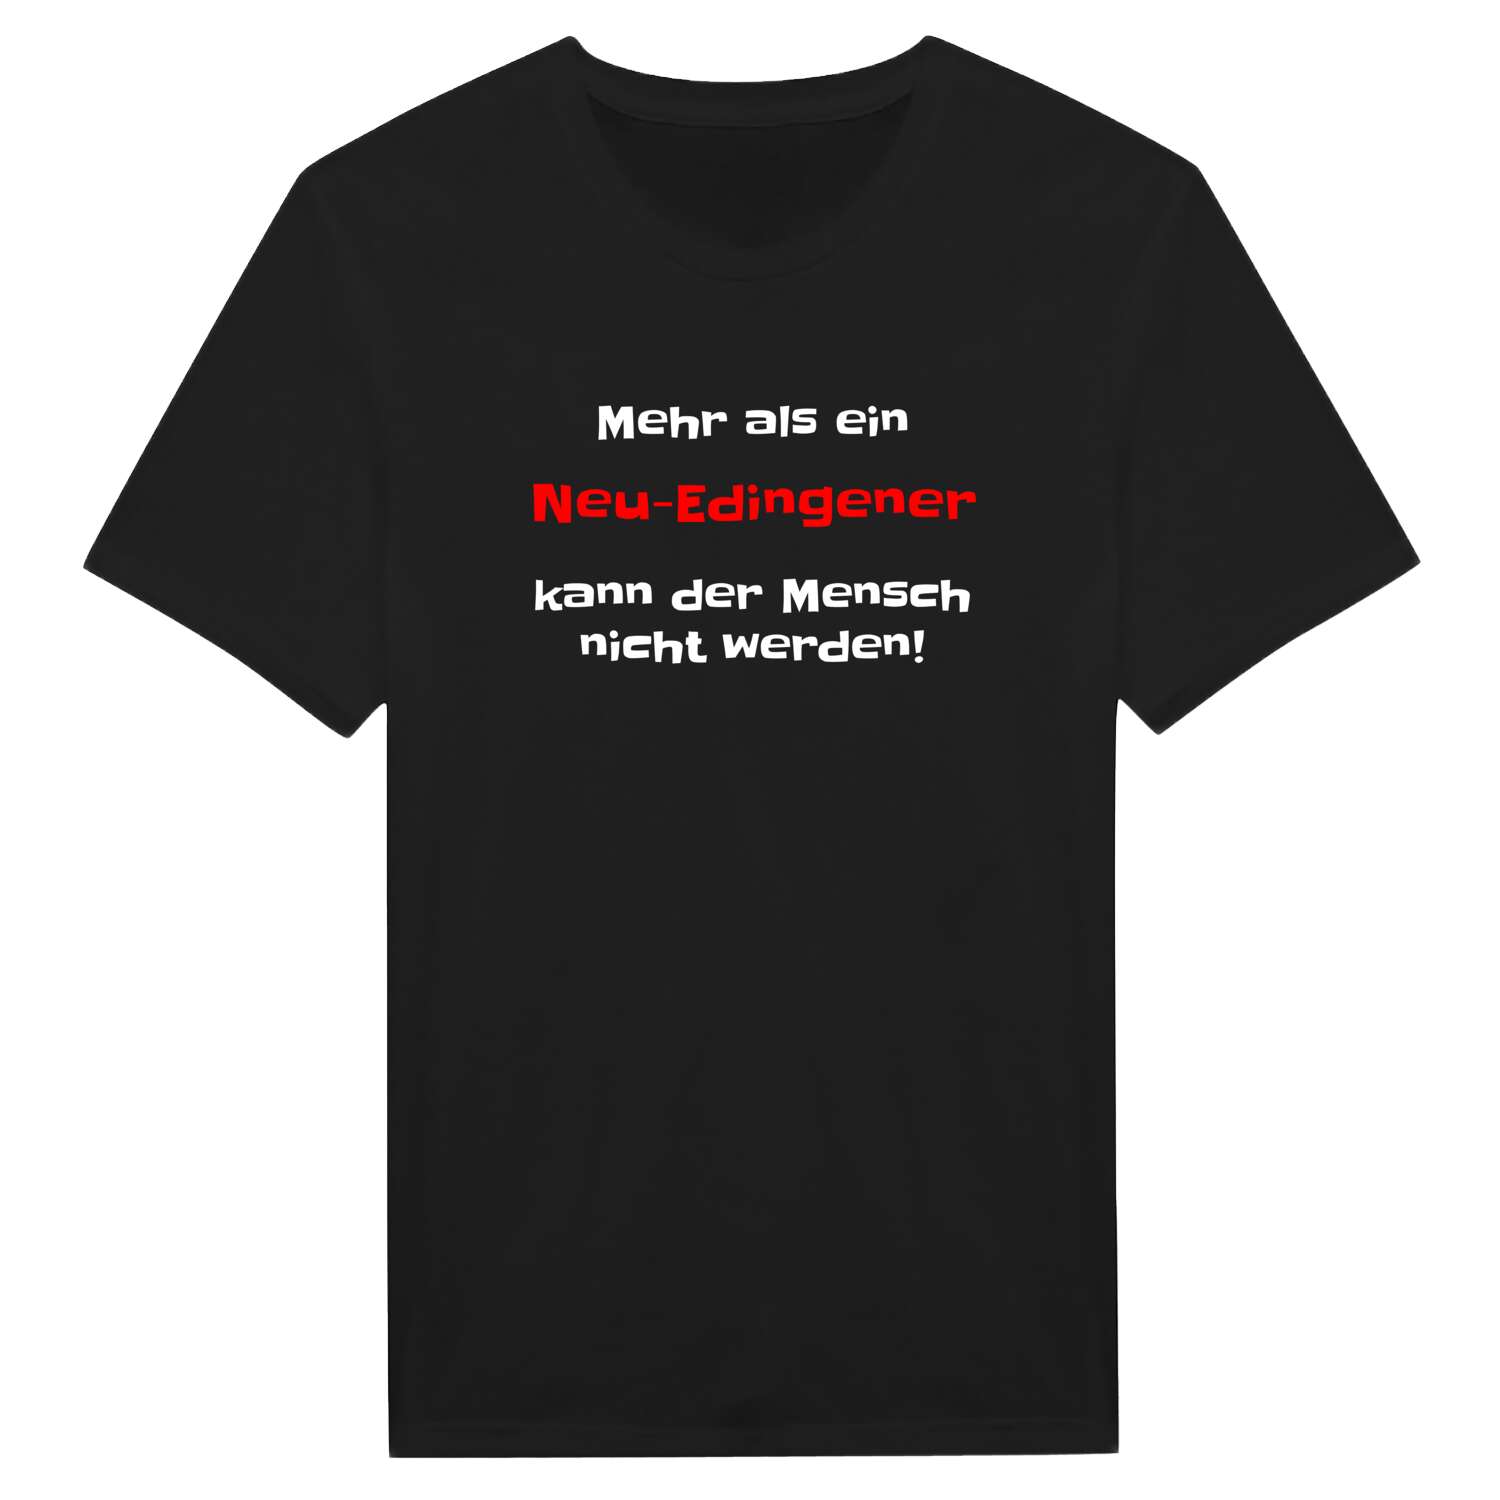 Neu-Edingen T-Shirt »Mehr als ein«